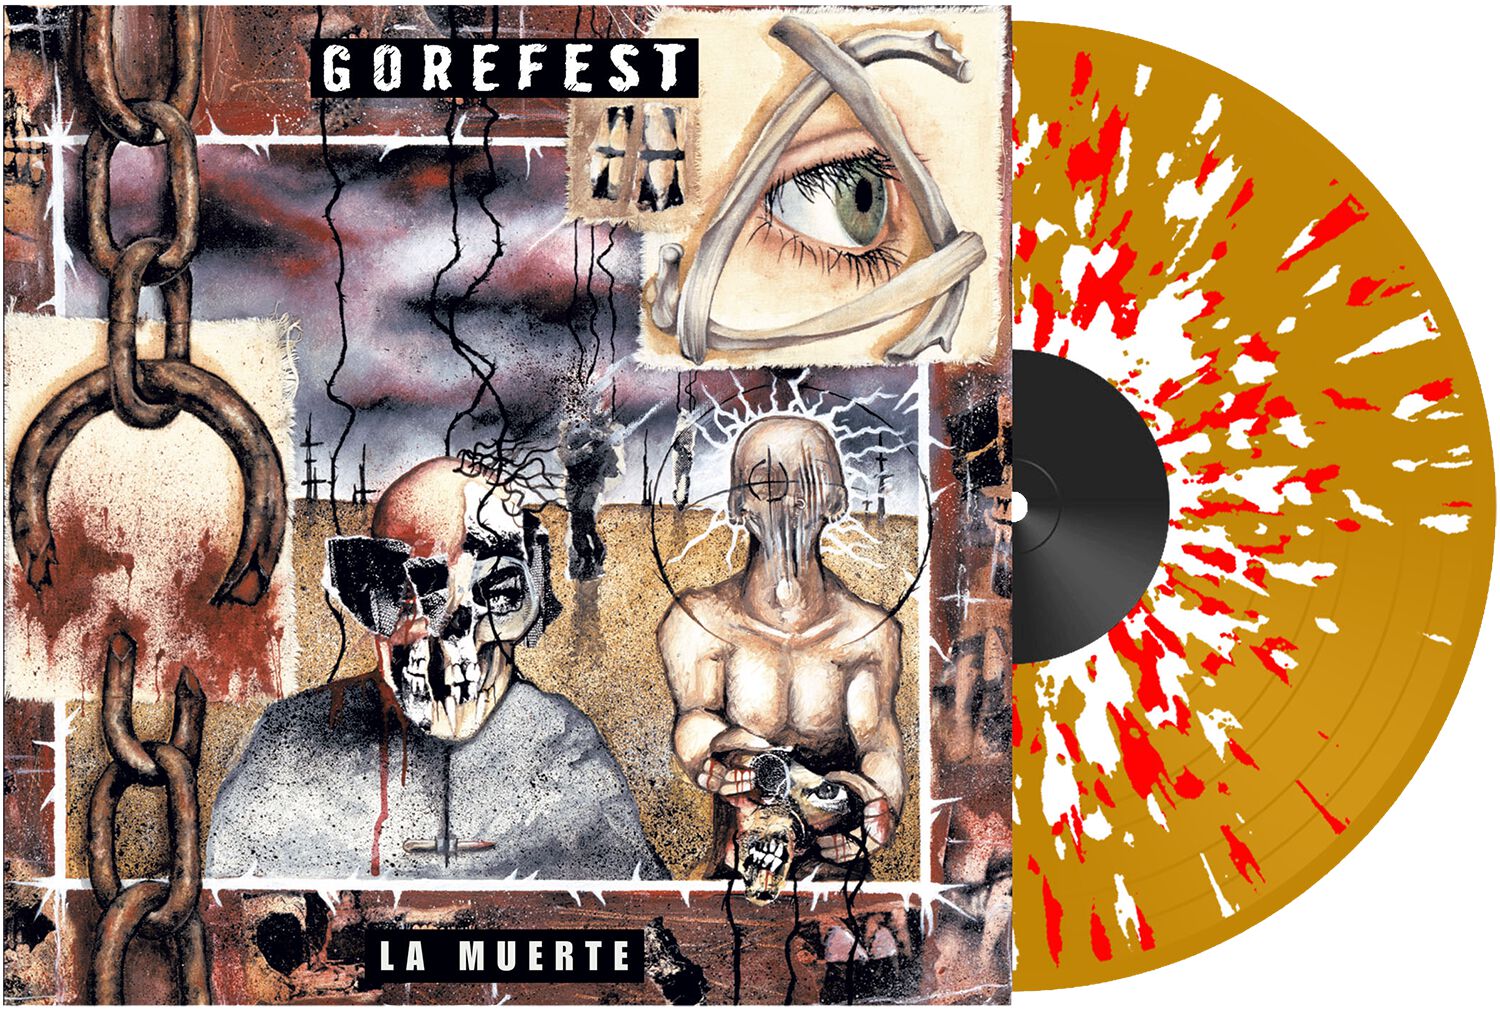 Image of Gorefest La muerte 2-LP splattered